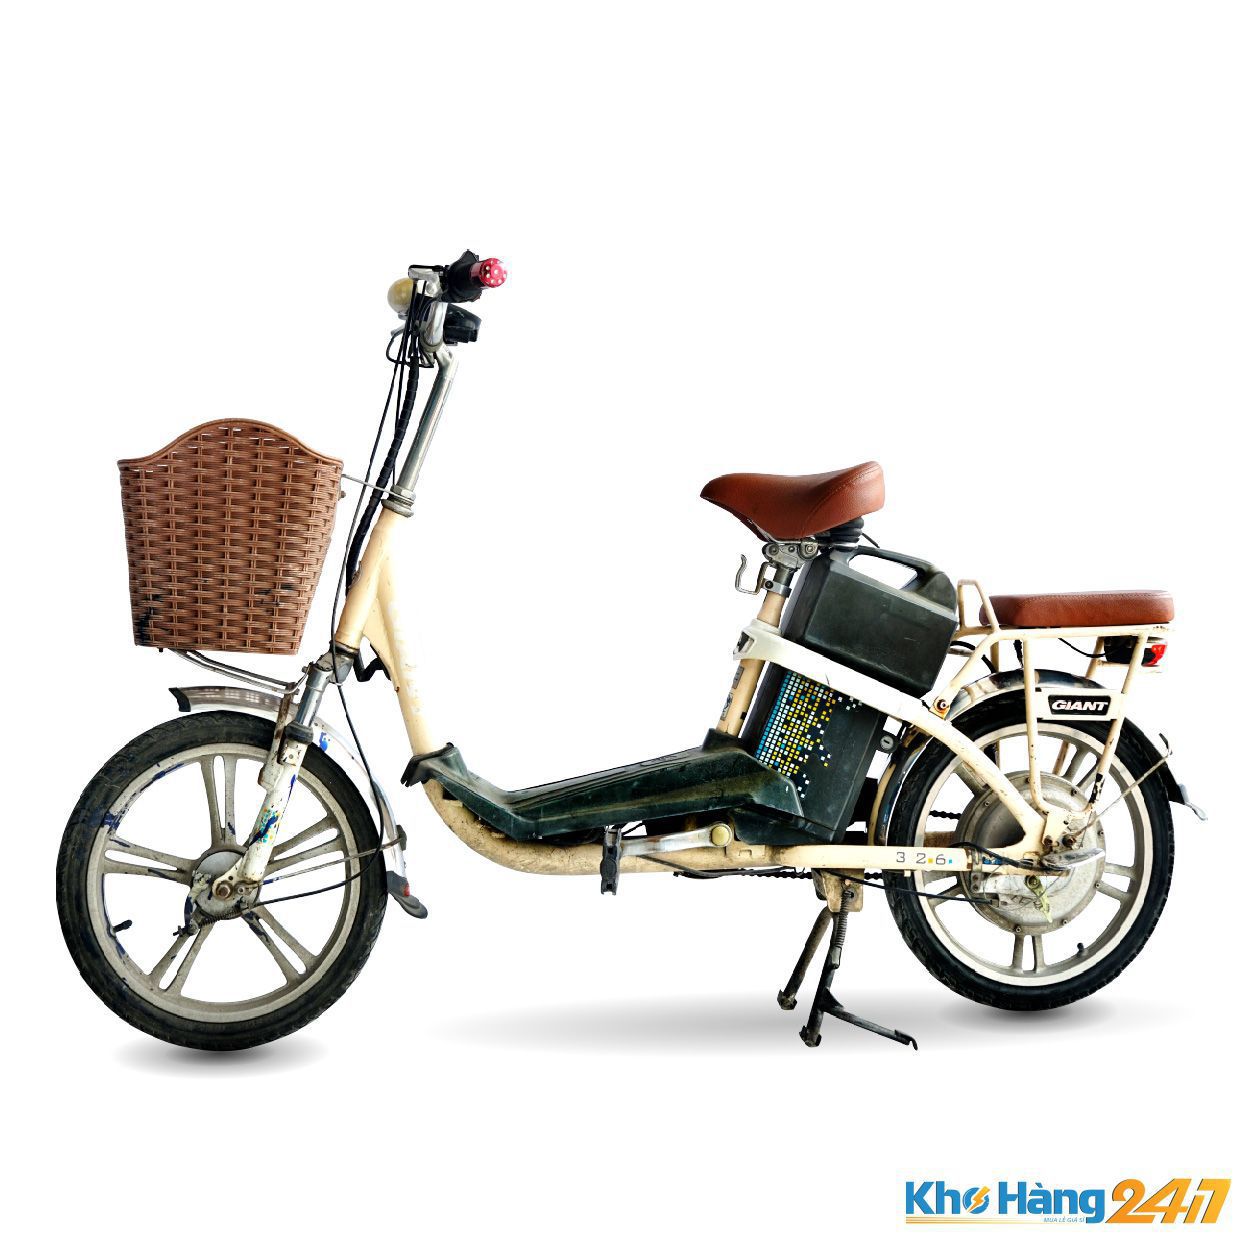 XE DAP DIEN GIANT 10 - Bán xe đạp điện cũ giá rẻ tại Tp.HCM